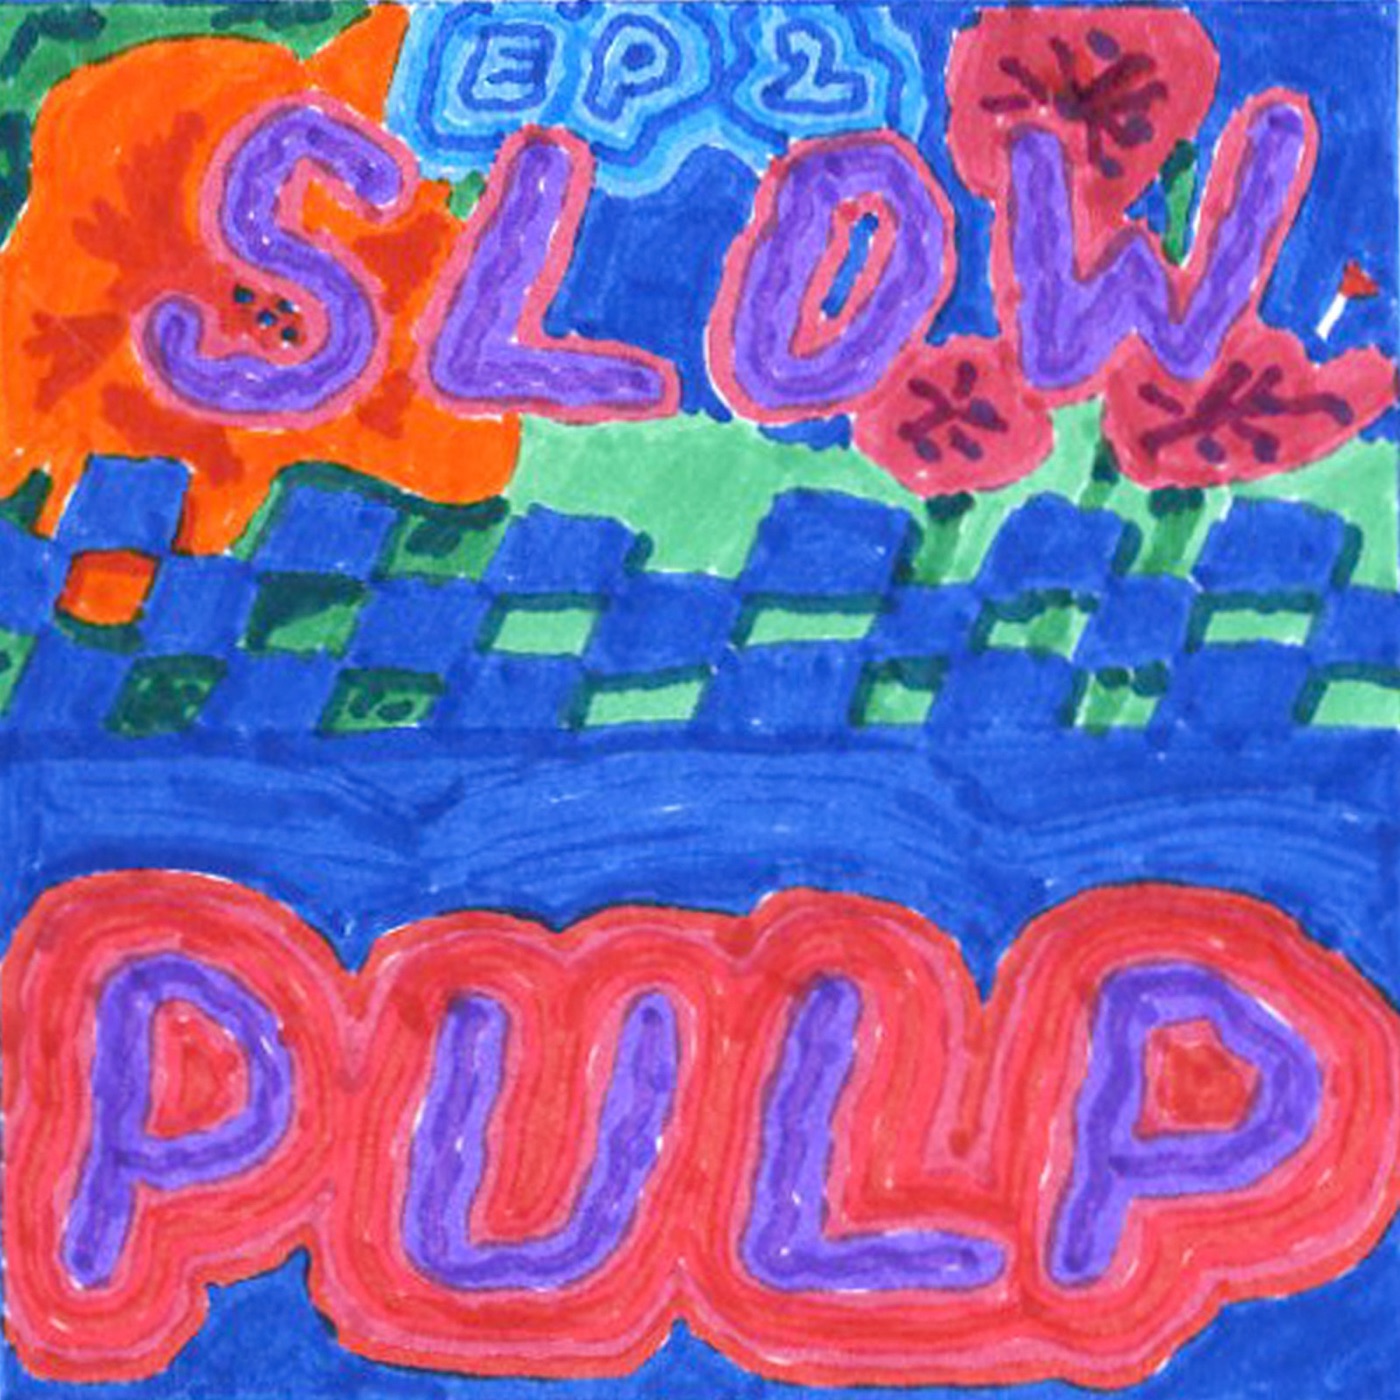 Ep2 album cover